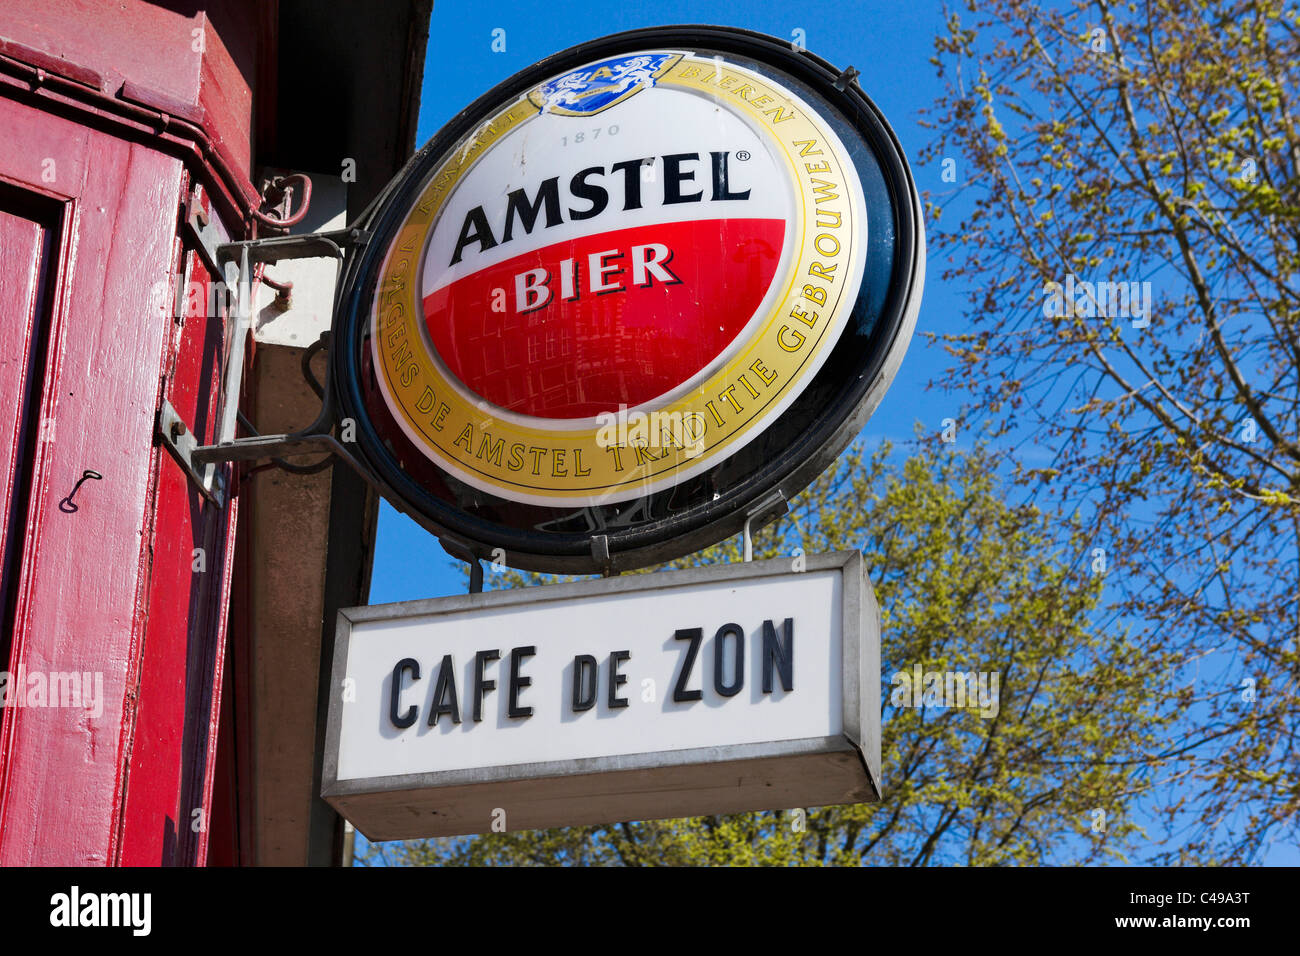 Pour la bière Amstel signe extérieur d'un bar dans le quartier rouge d'Amsterdam, Pays-Bas Banque D'Images